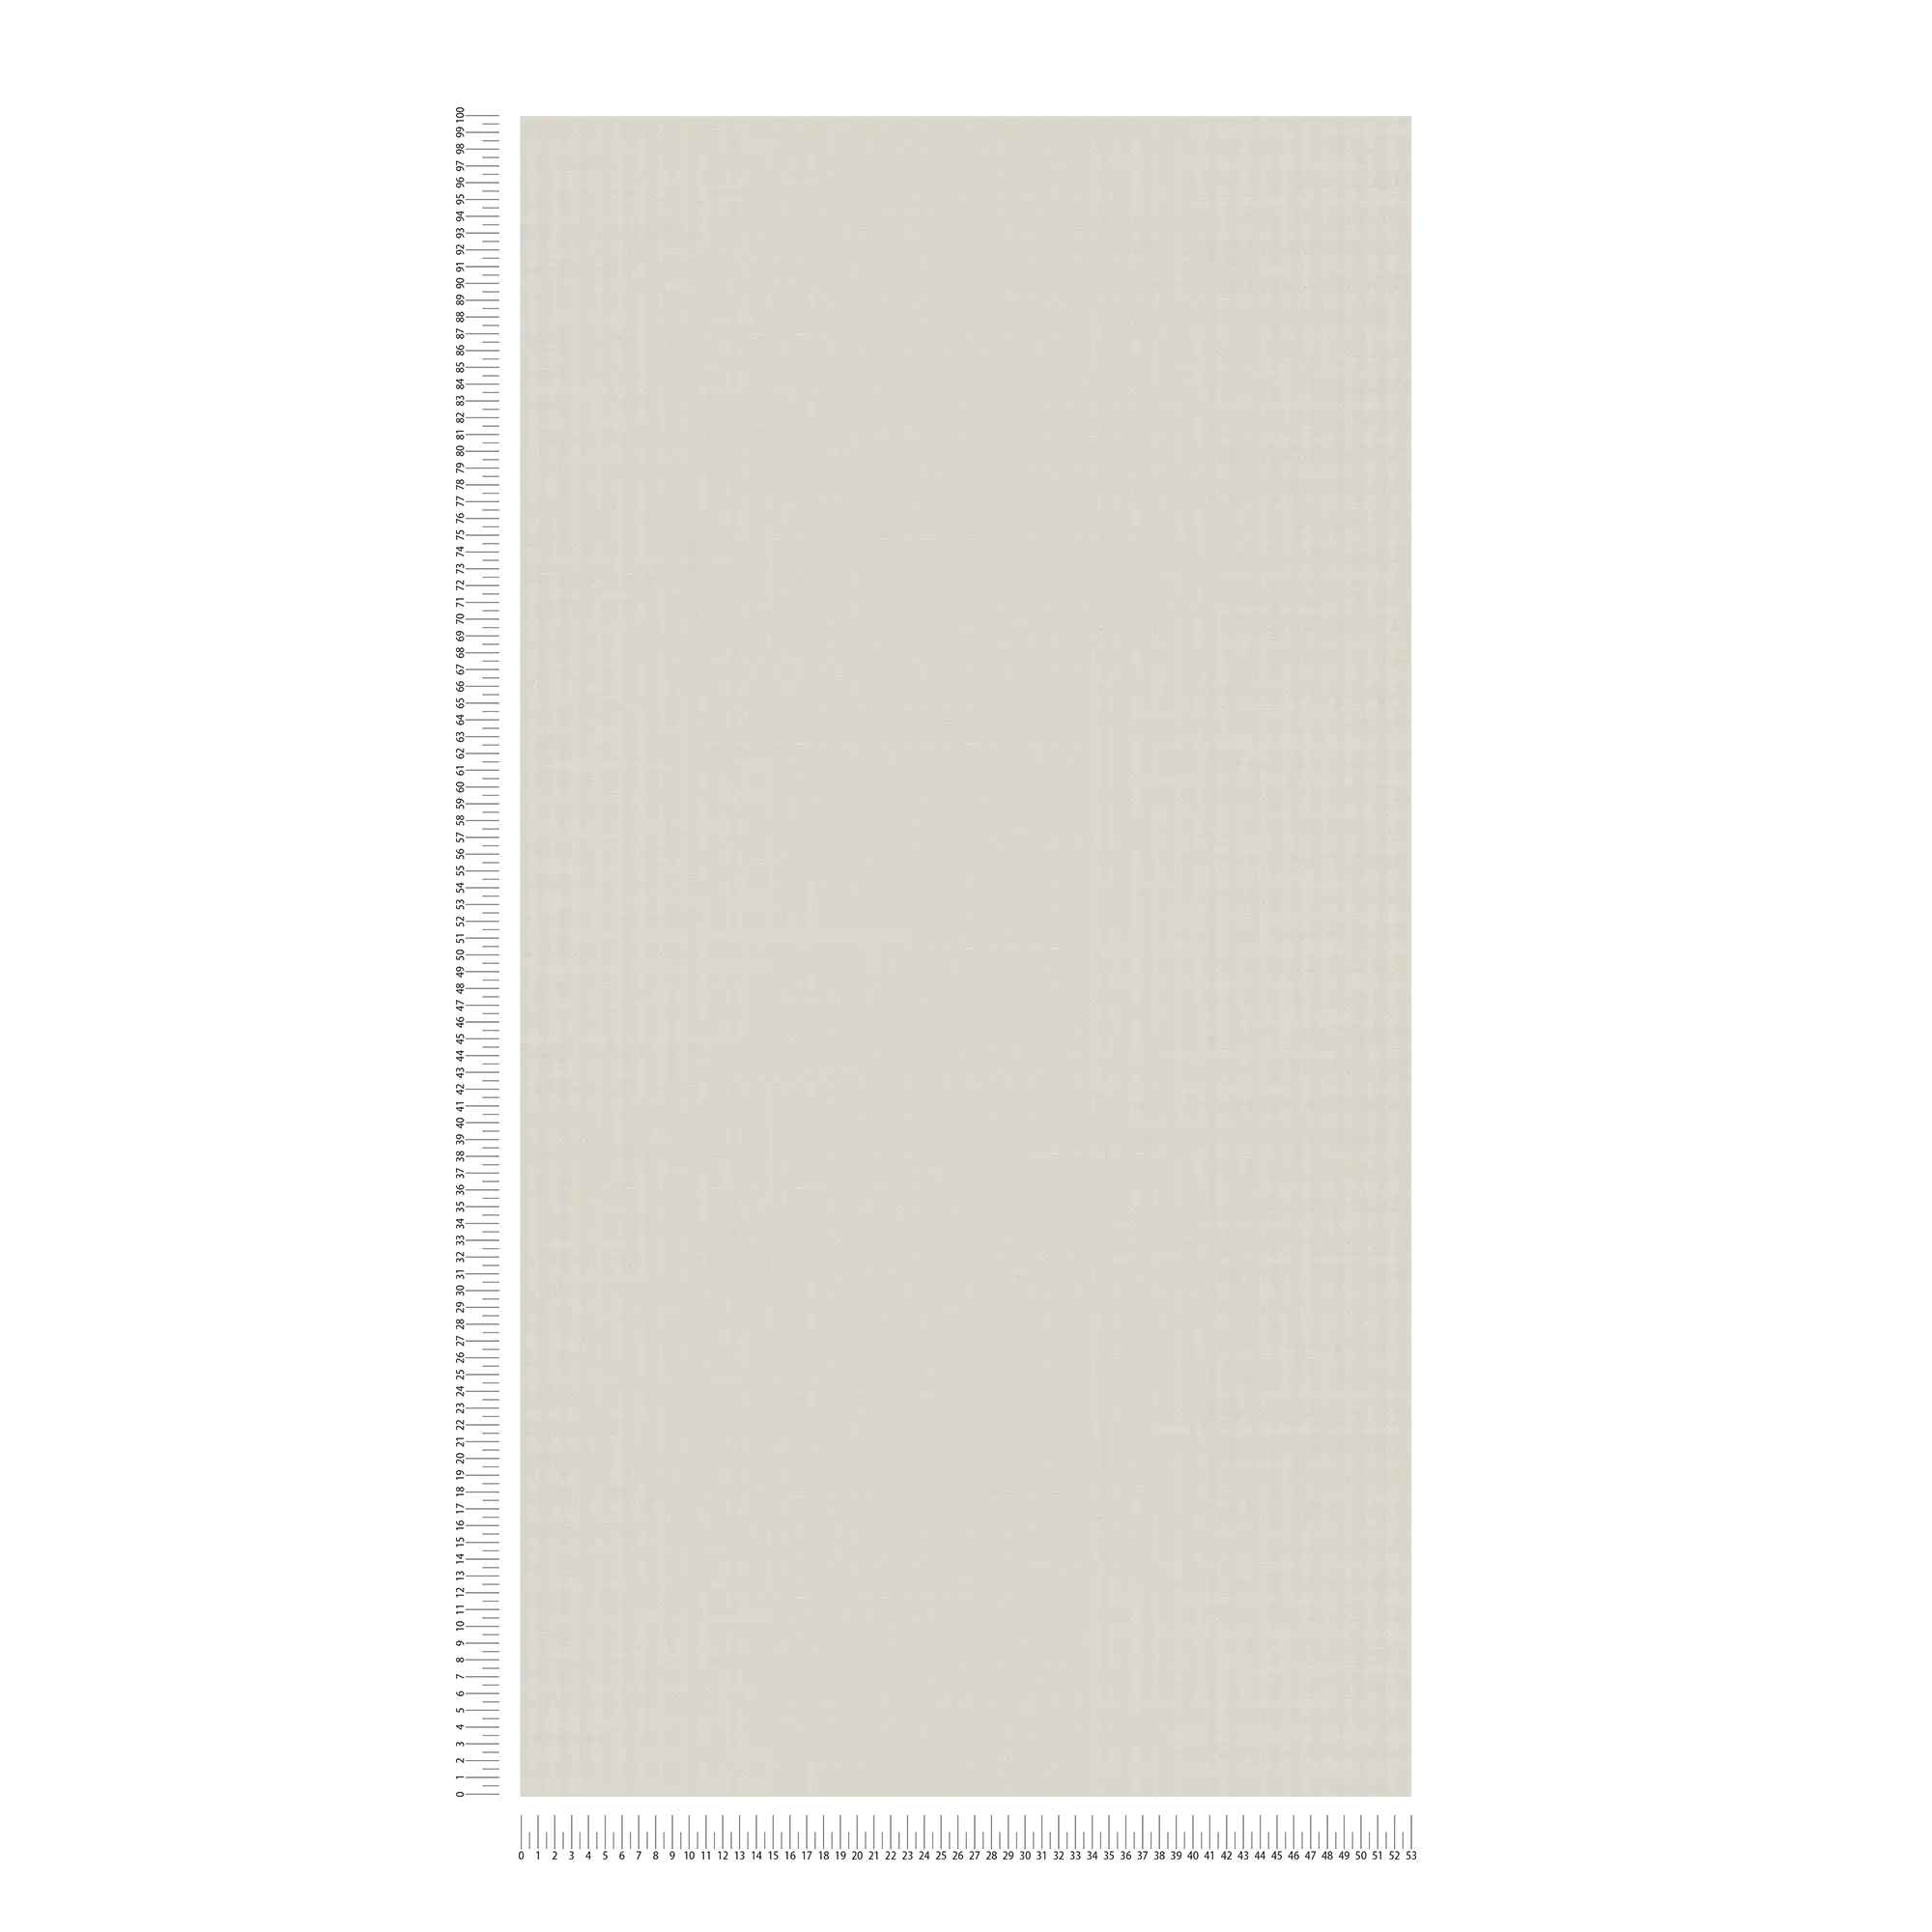             Wallpaper Karl LAGERFELD with profile pattern - beige, grey
        